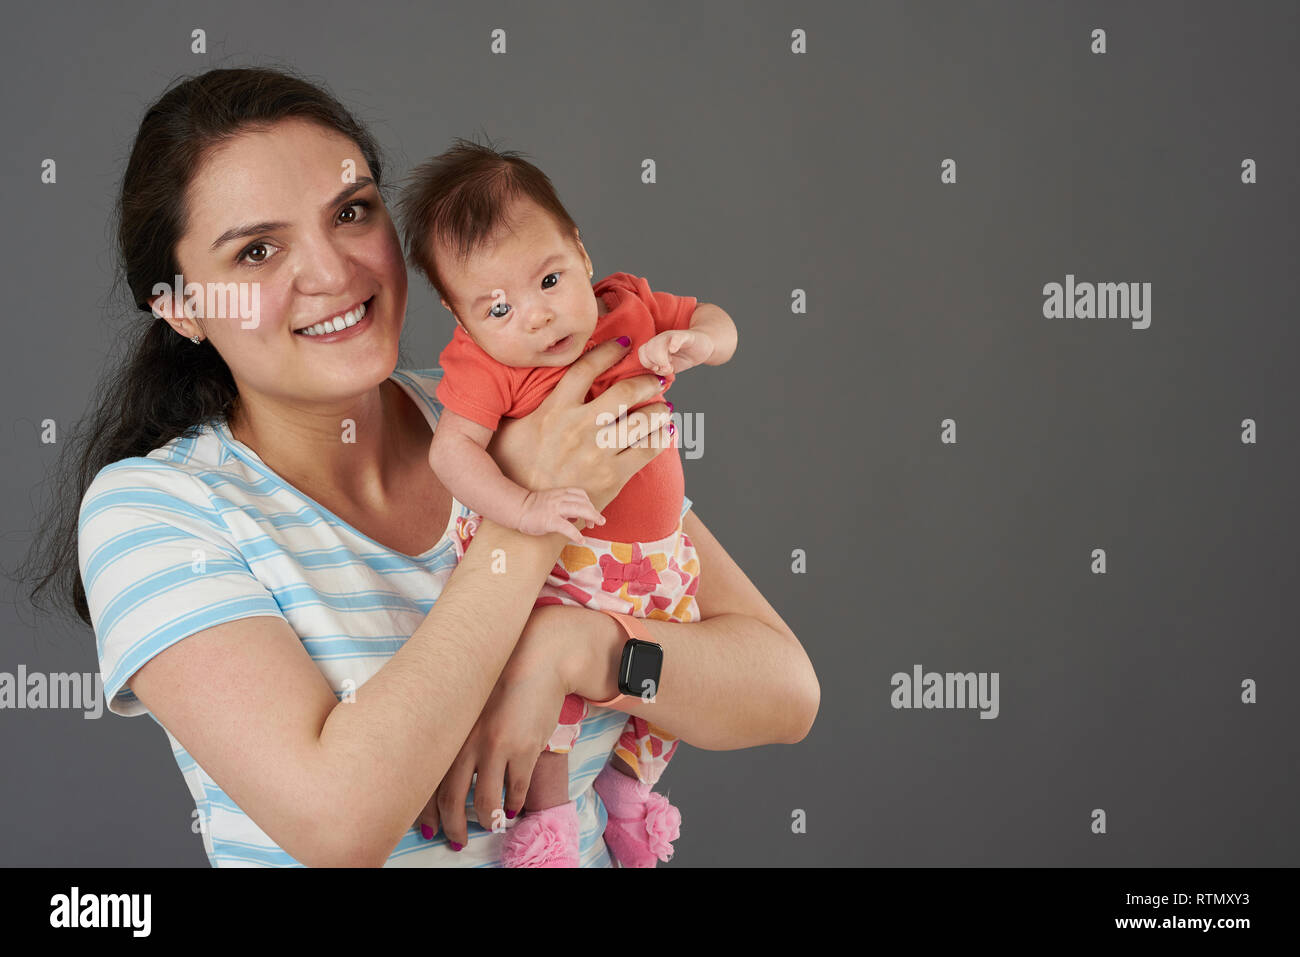 Jeune maman avec bébé in casual isolé sur fond gris Banque D'Images